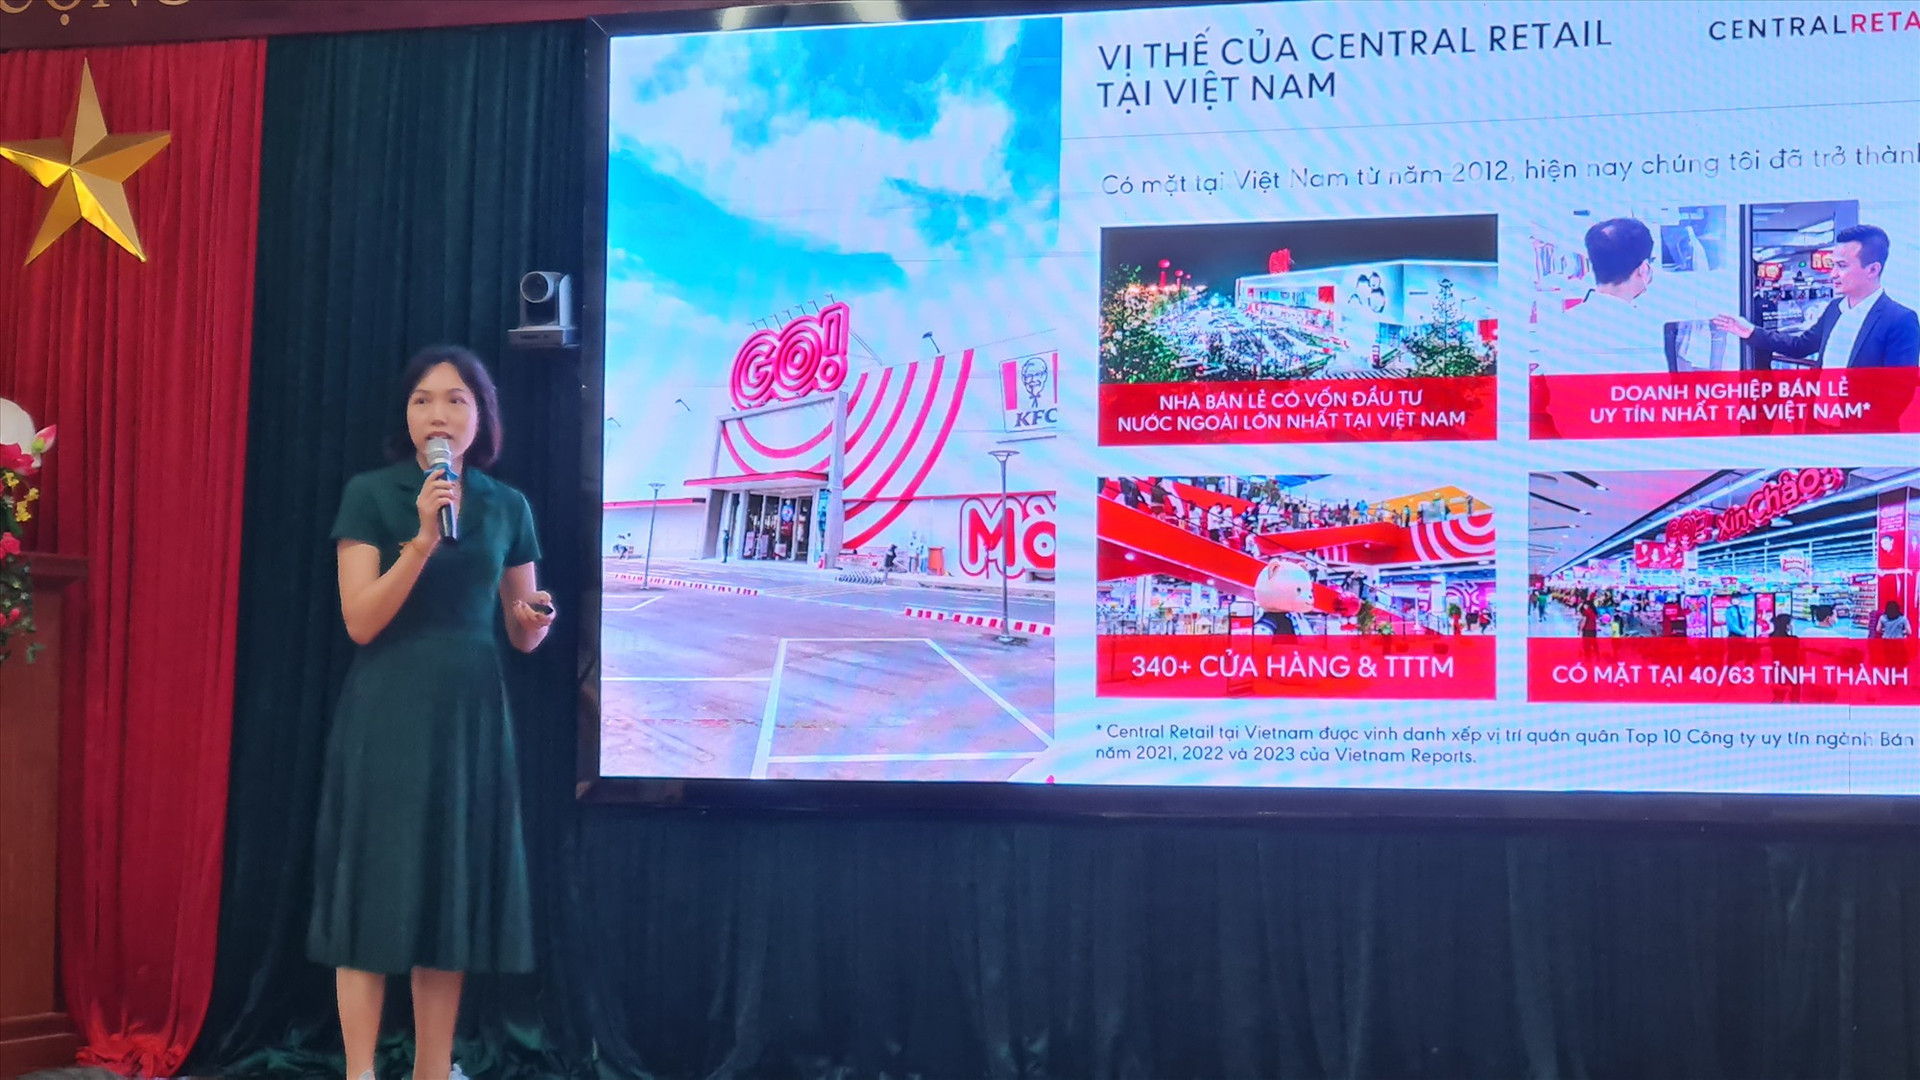 Đại diện Tập đoàn Central Retail giới thiệu về khả năng tiêu thụ sản phẩm của Tập đoàn tại Việt Nam. Ảnh: D.L